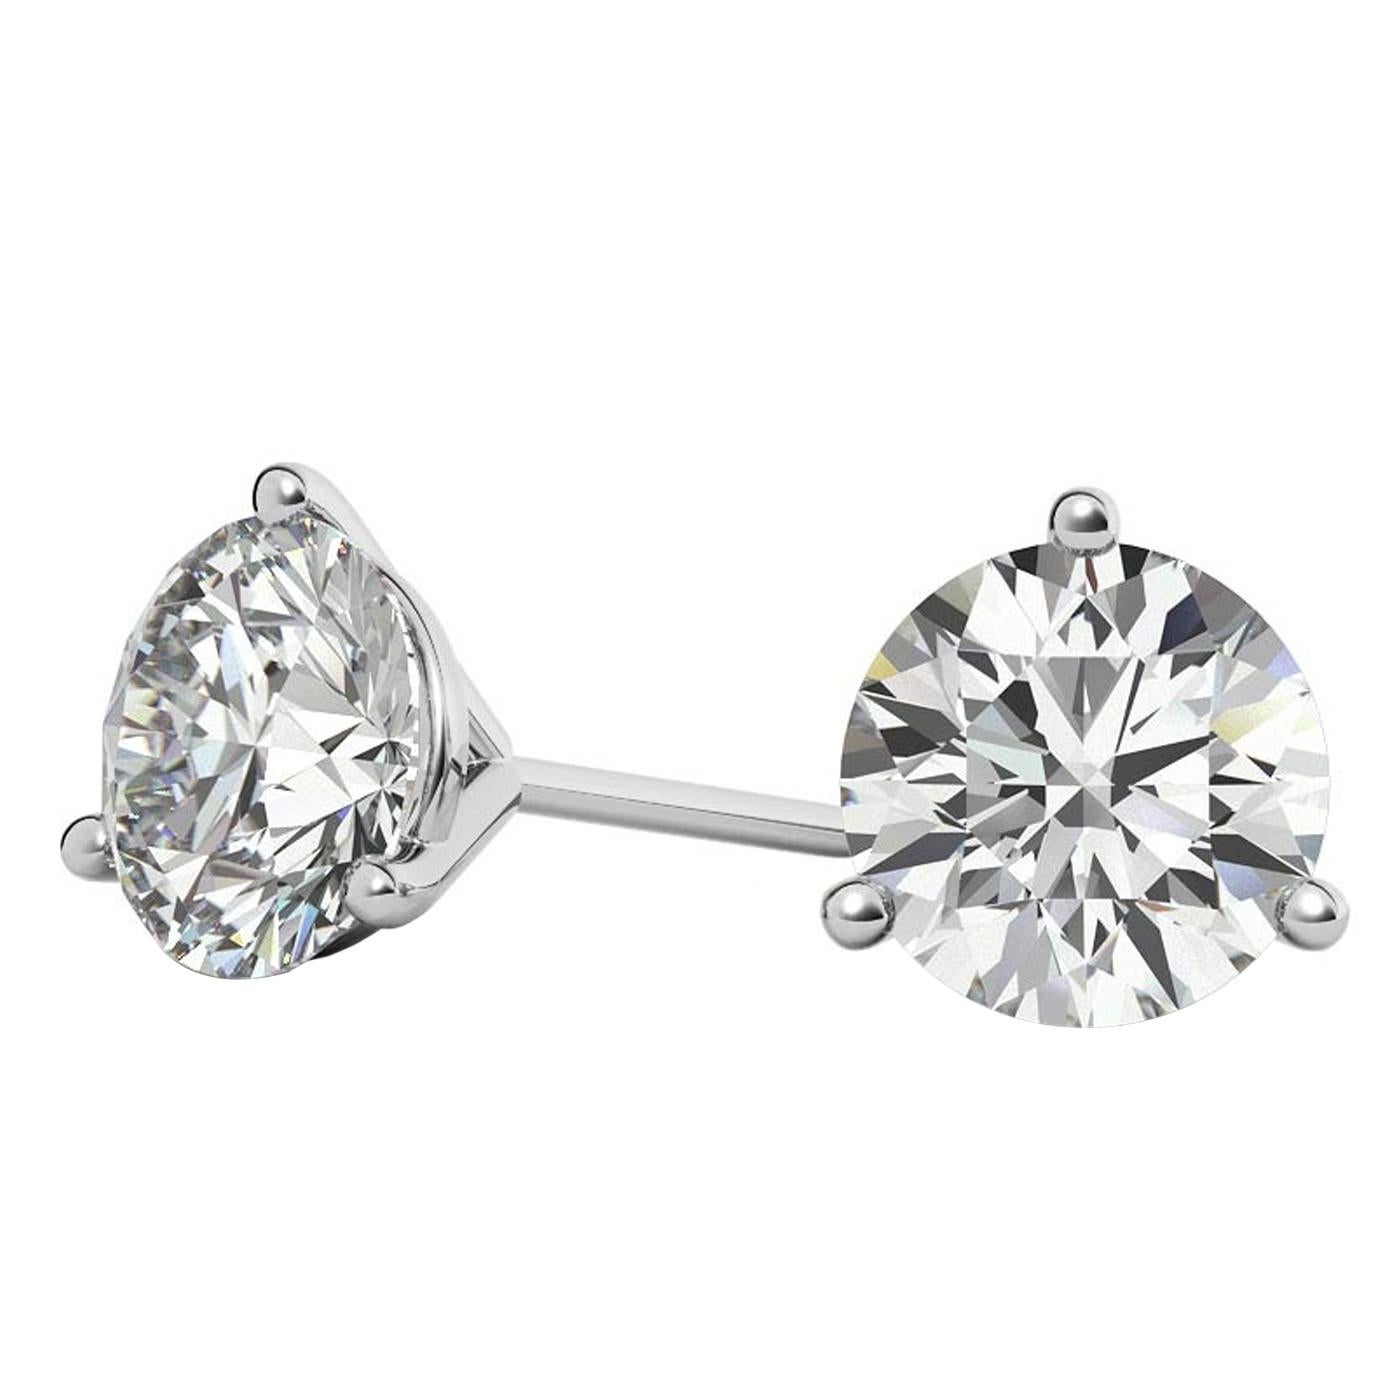 Dieses klassische Paar Ohrstecker mit natürlichen Diamanten zeichnet sich durch zwei wunderschöne runde Diamanten im Brillantschliff aus. Diese Diamanten wiegen 1,01 und 1,00 mit (H Farbe), (SI2/SI3) Klarheit. Sie sind elegant in 3-Zacken-Fassungen